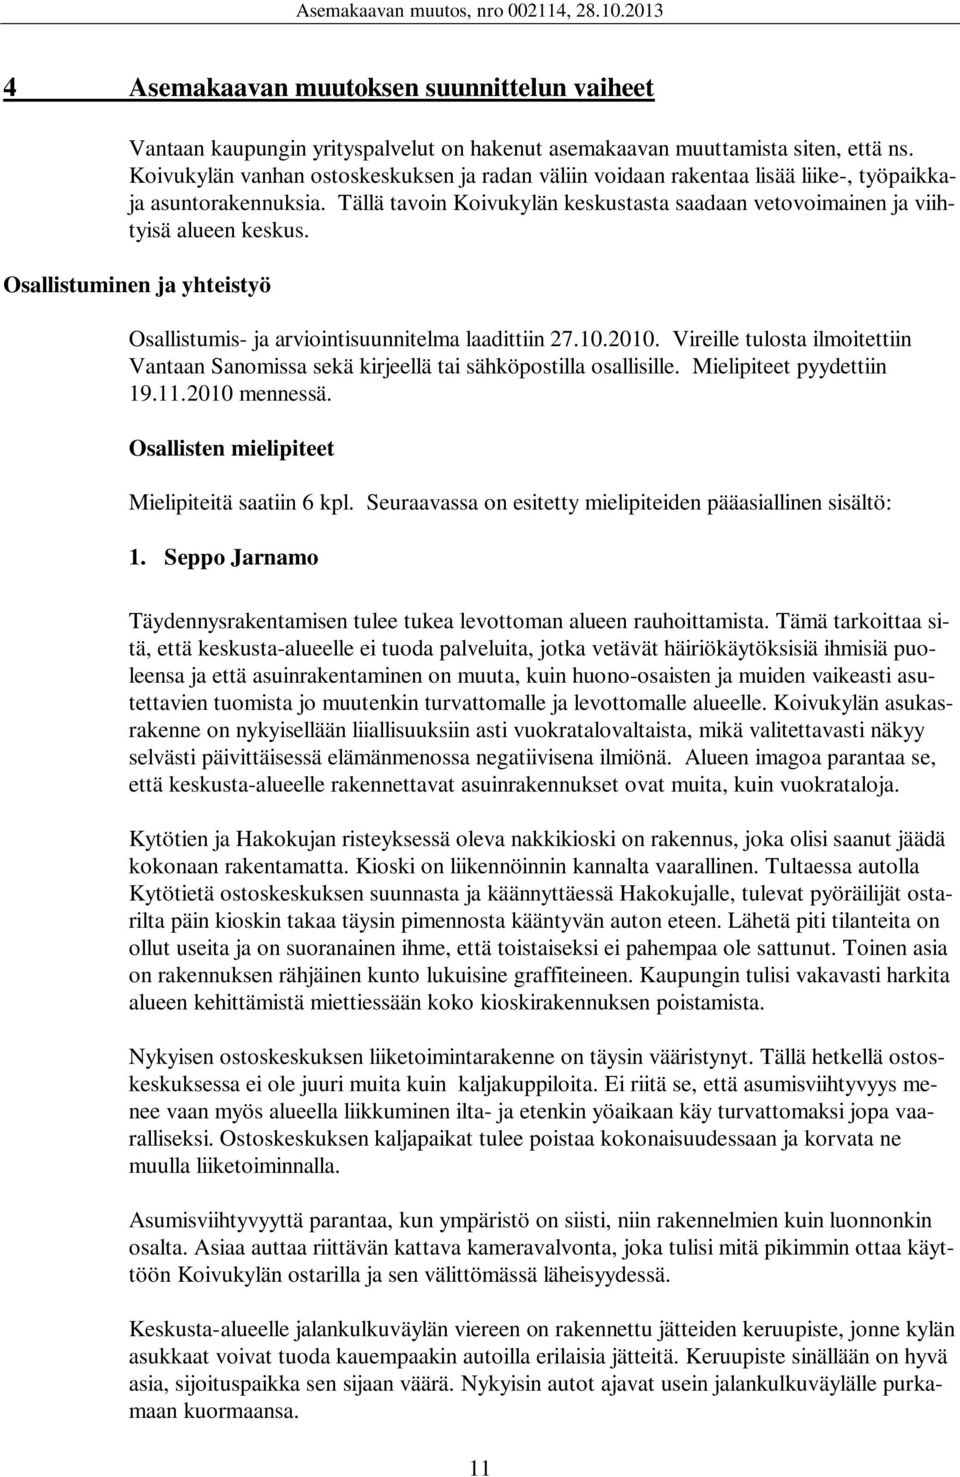 Osallistuminen ja yhteistyö Osallistumis- ja arviointisuunnitelma laadittiin 27.10.2010. Vireille tulosta ilmoitettiin Vantaan Sanomissa sekä kirjeellä tai sähköpostilla osallisille.